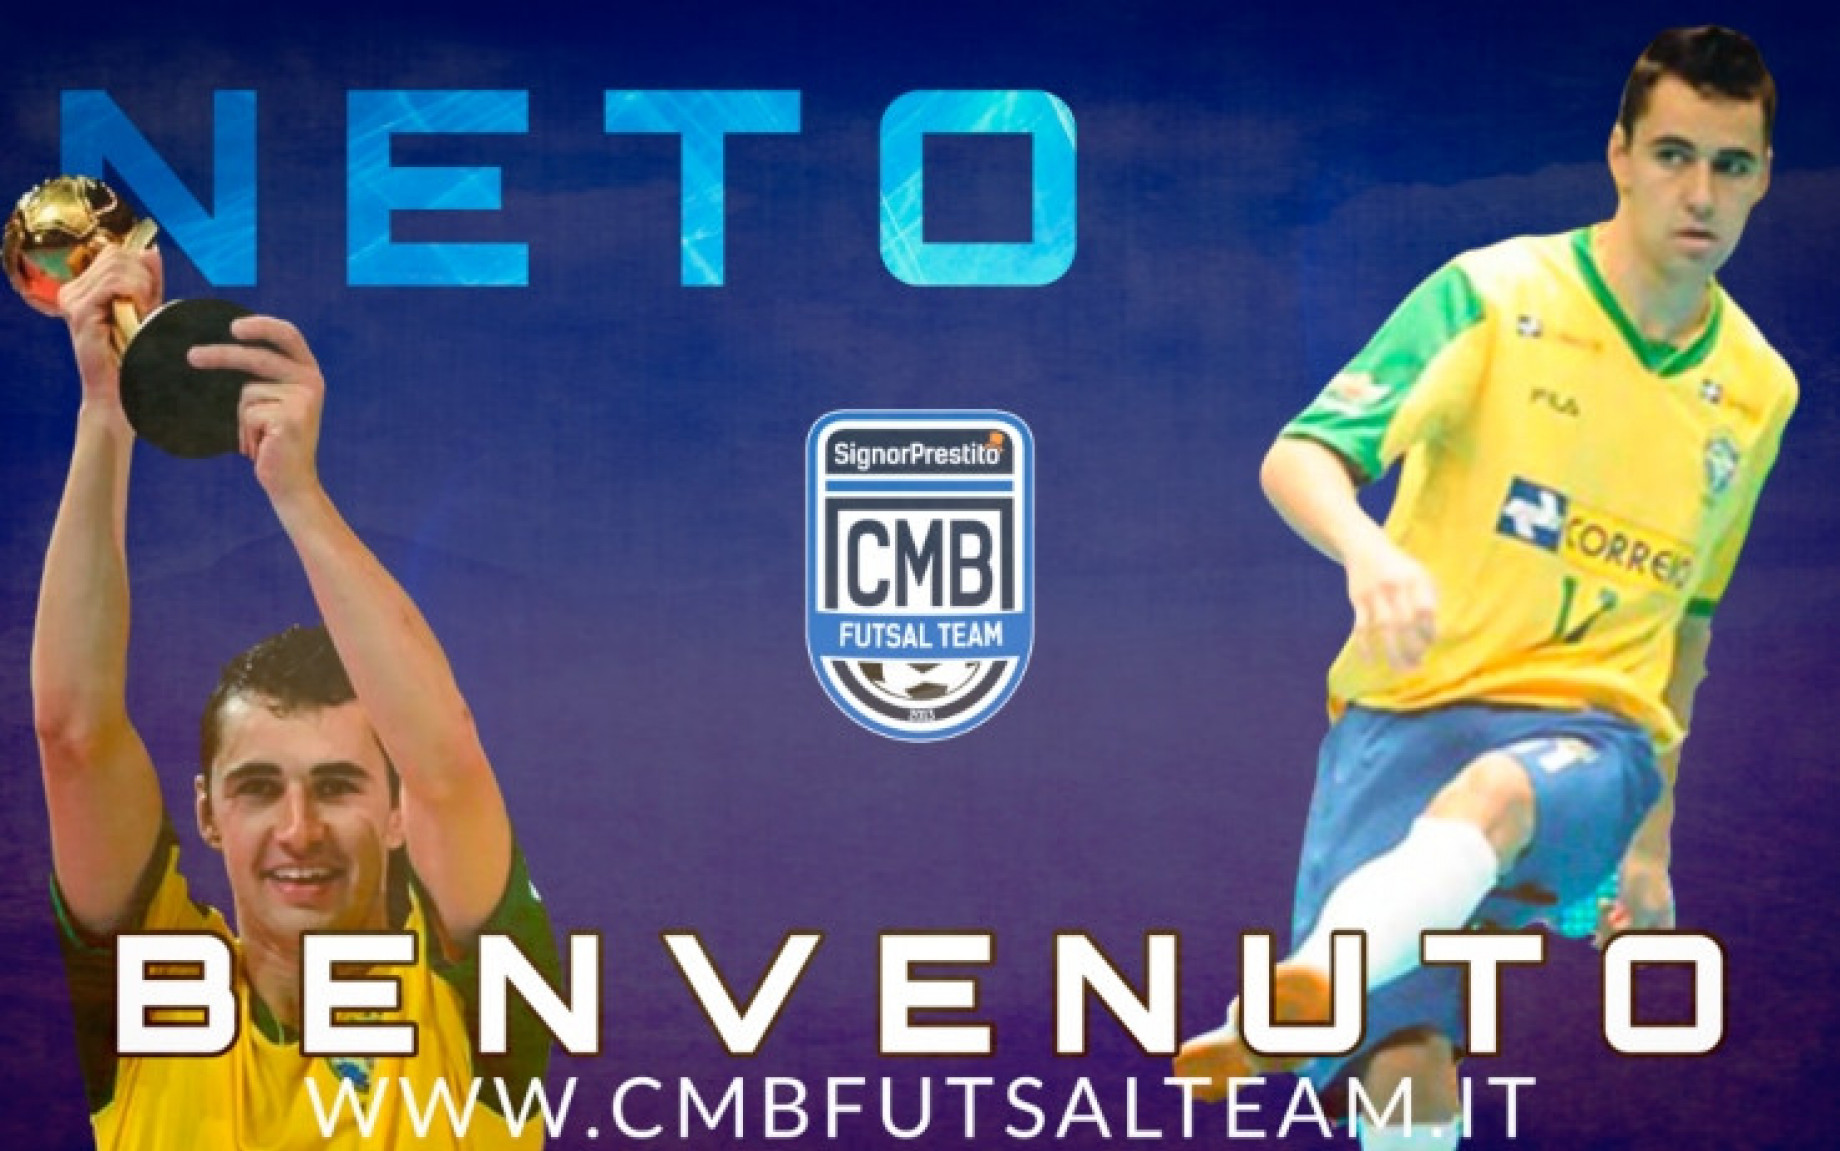 Screen_Neto_Futsal_1.jpg